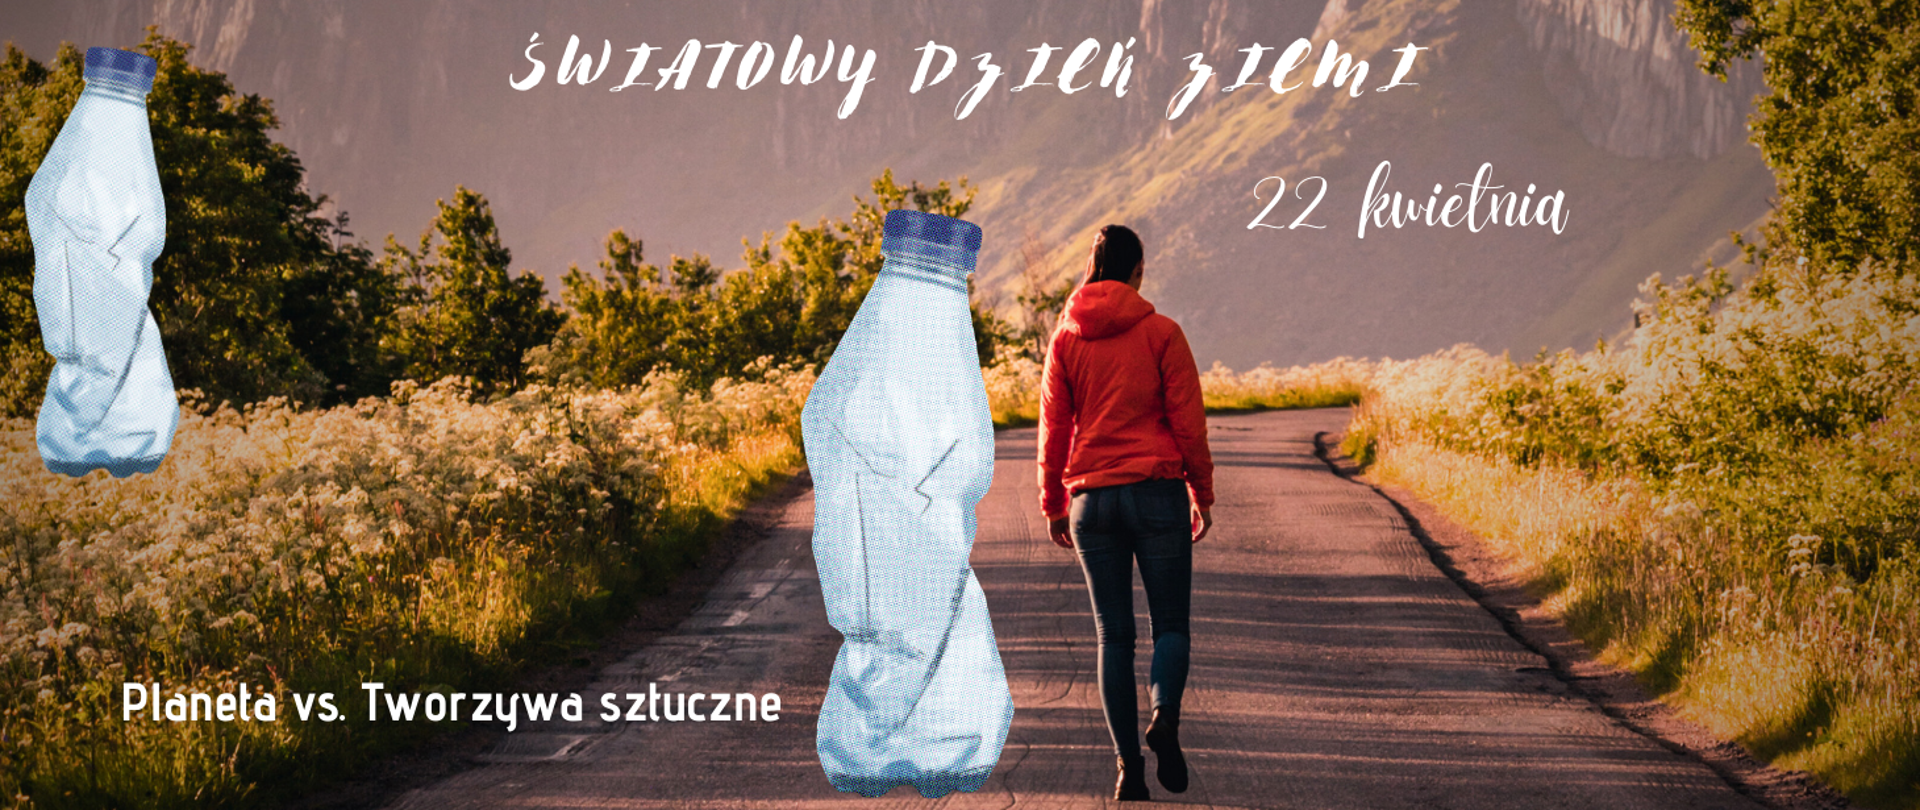 Kobieta idzie drogą, a obok niej stoi ogromna plastikowa butelka